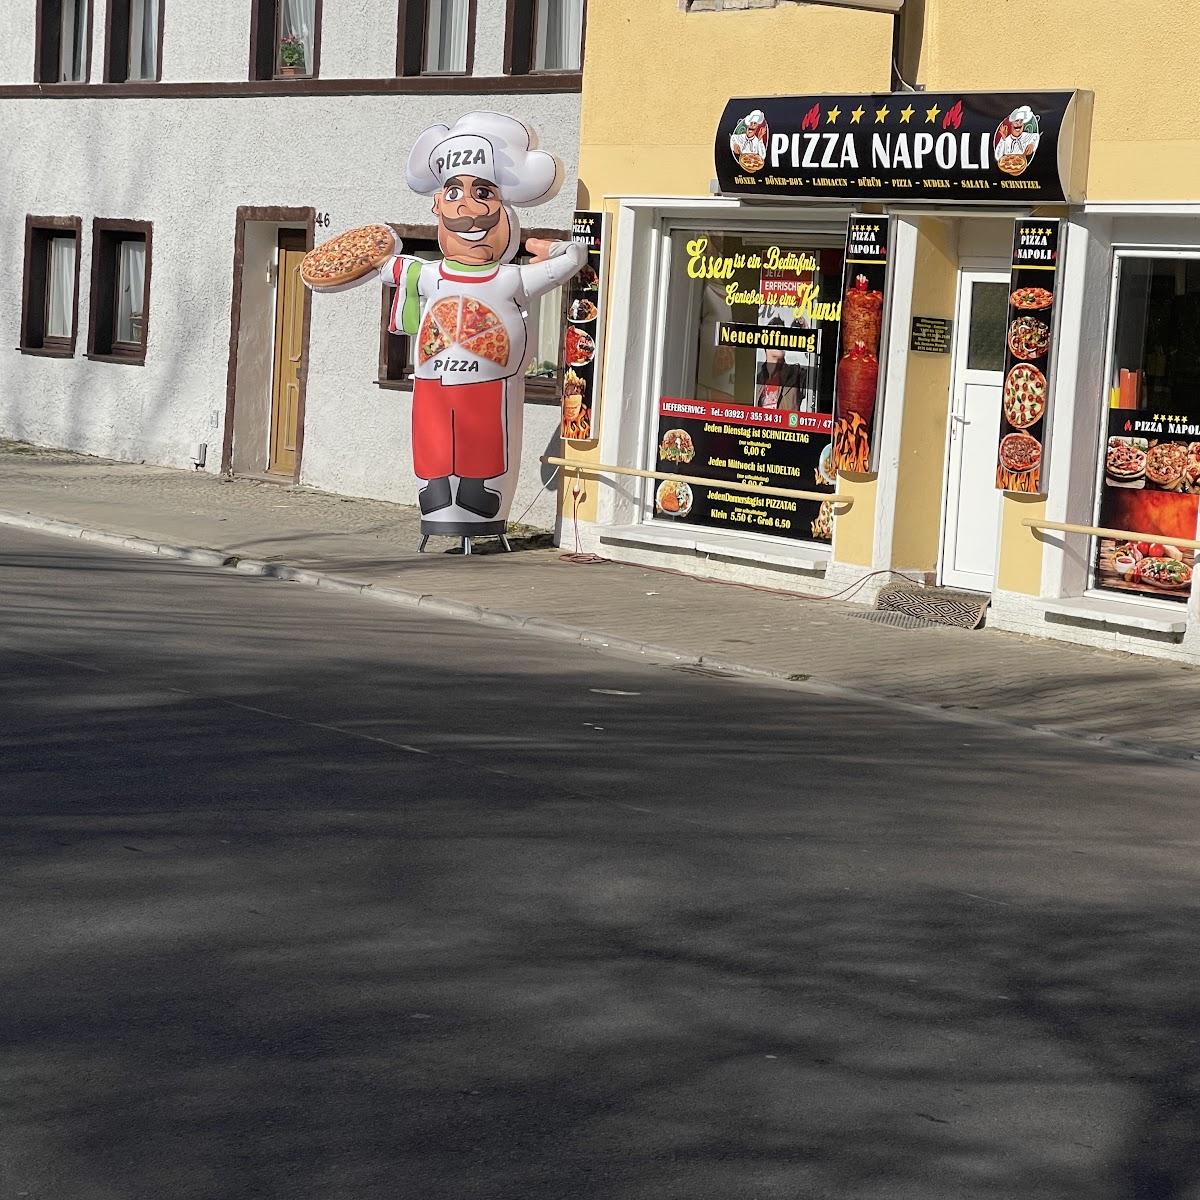 Restaurant "Pizza napoli" in Zerbst-Anhalt